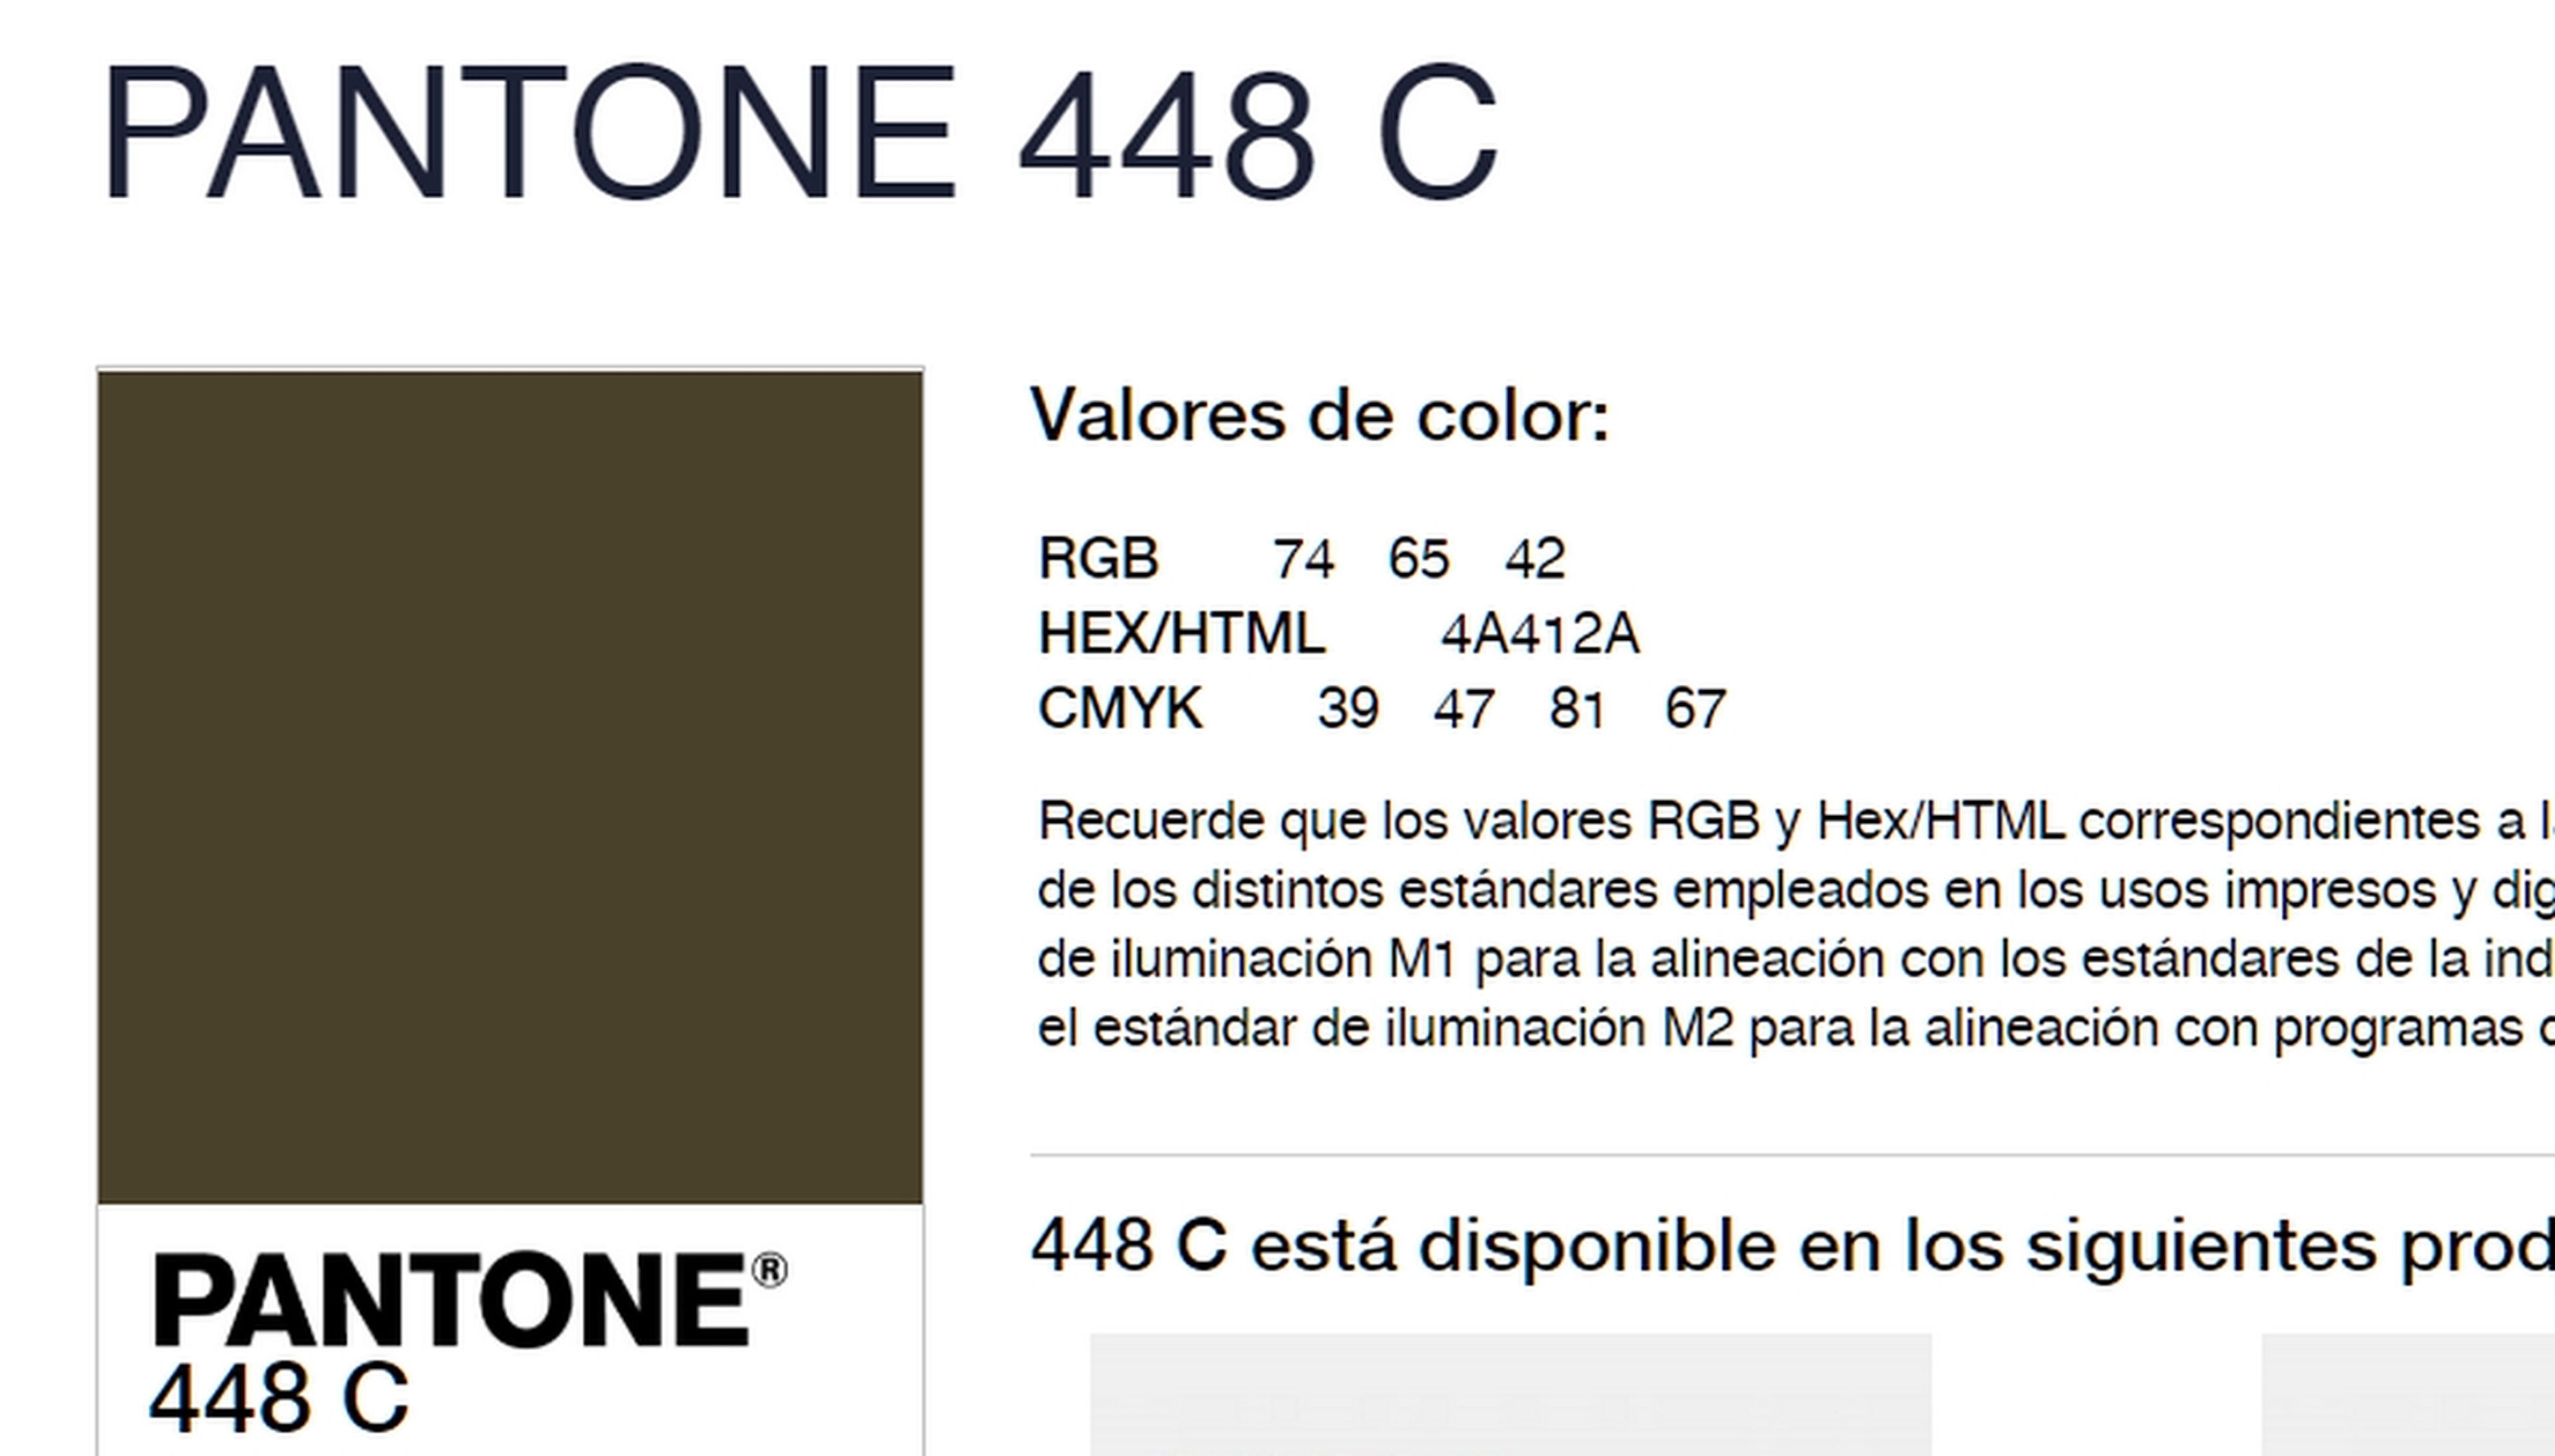 Pantone 448 C